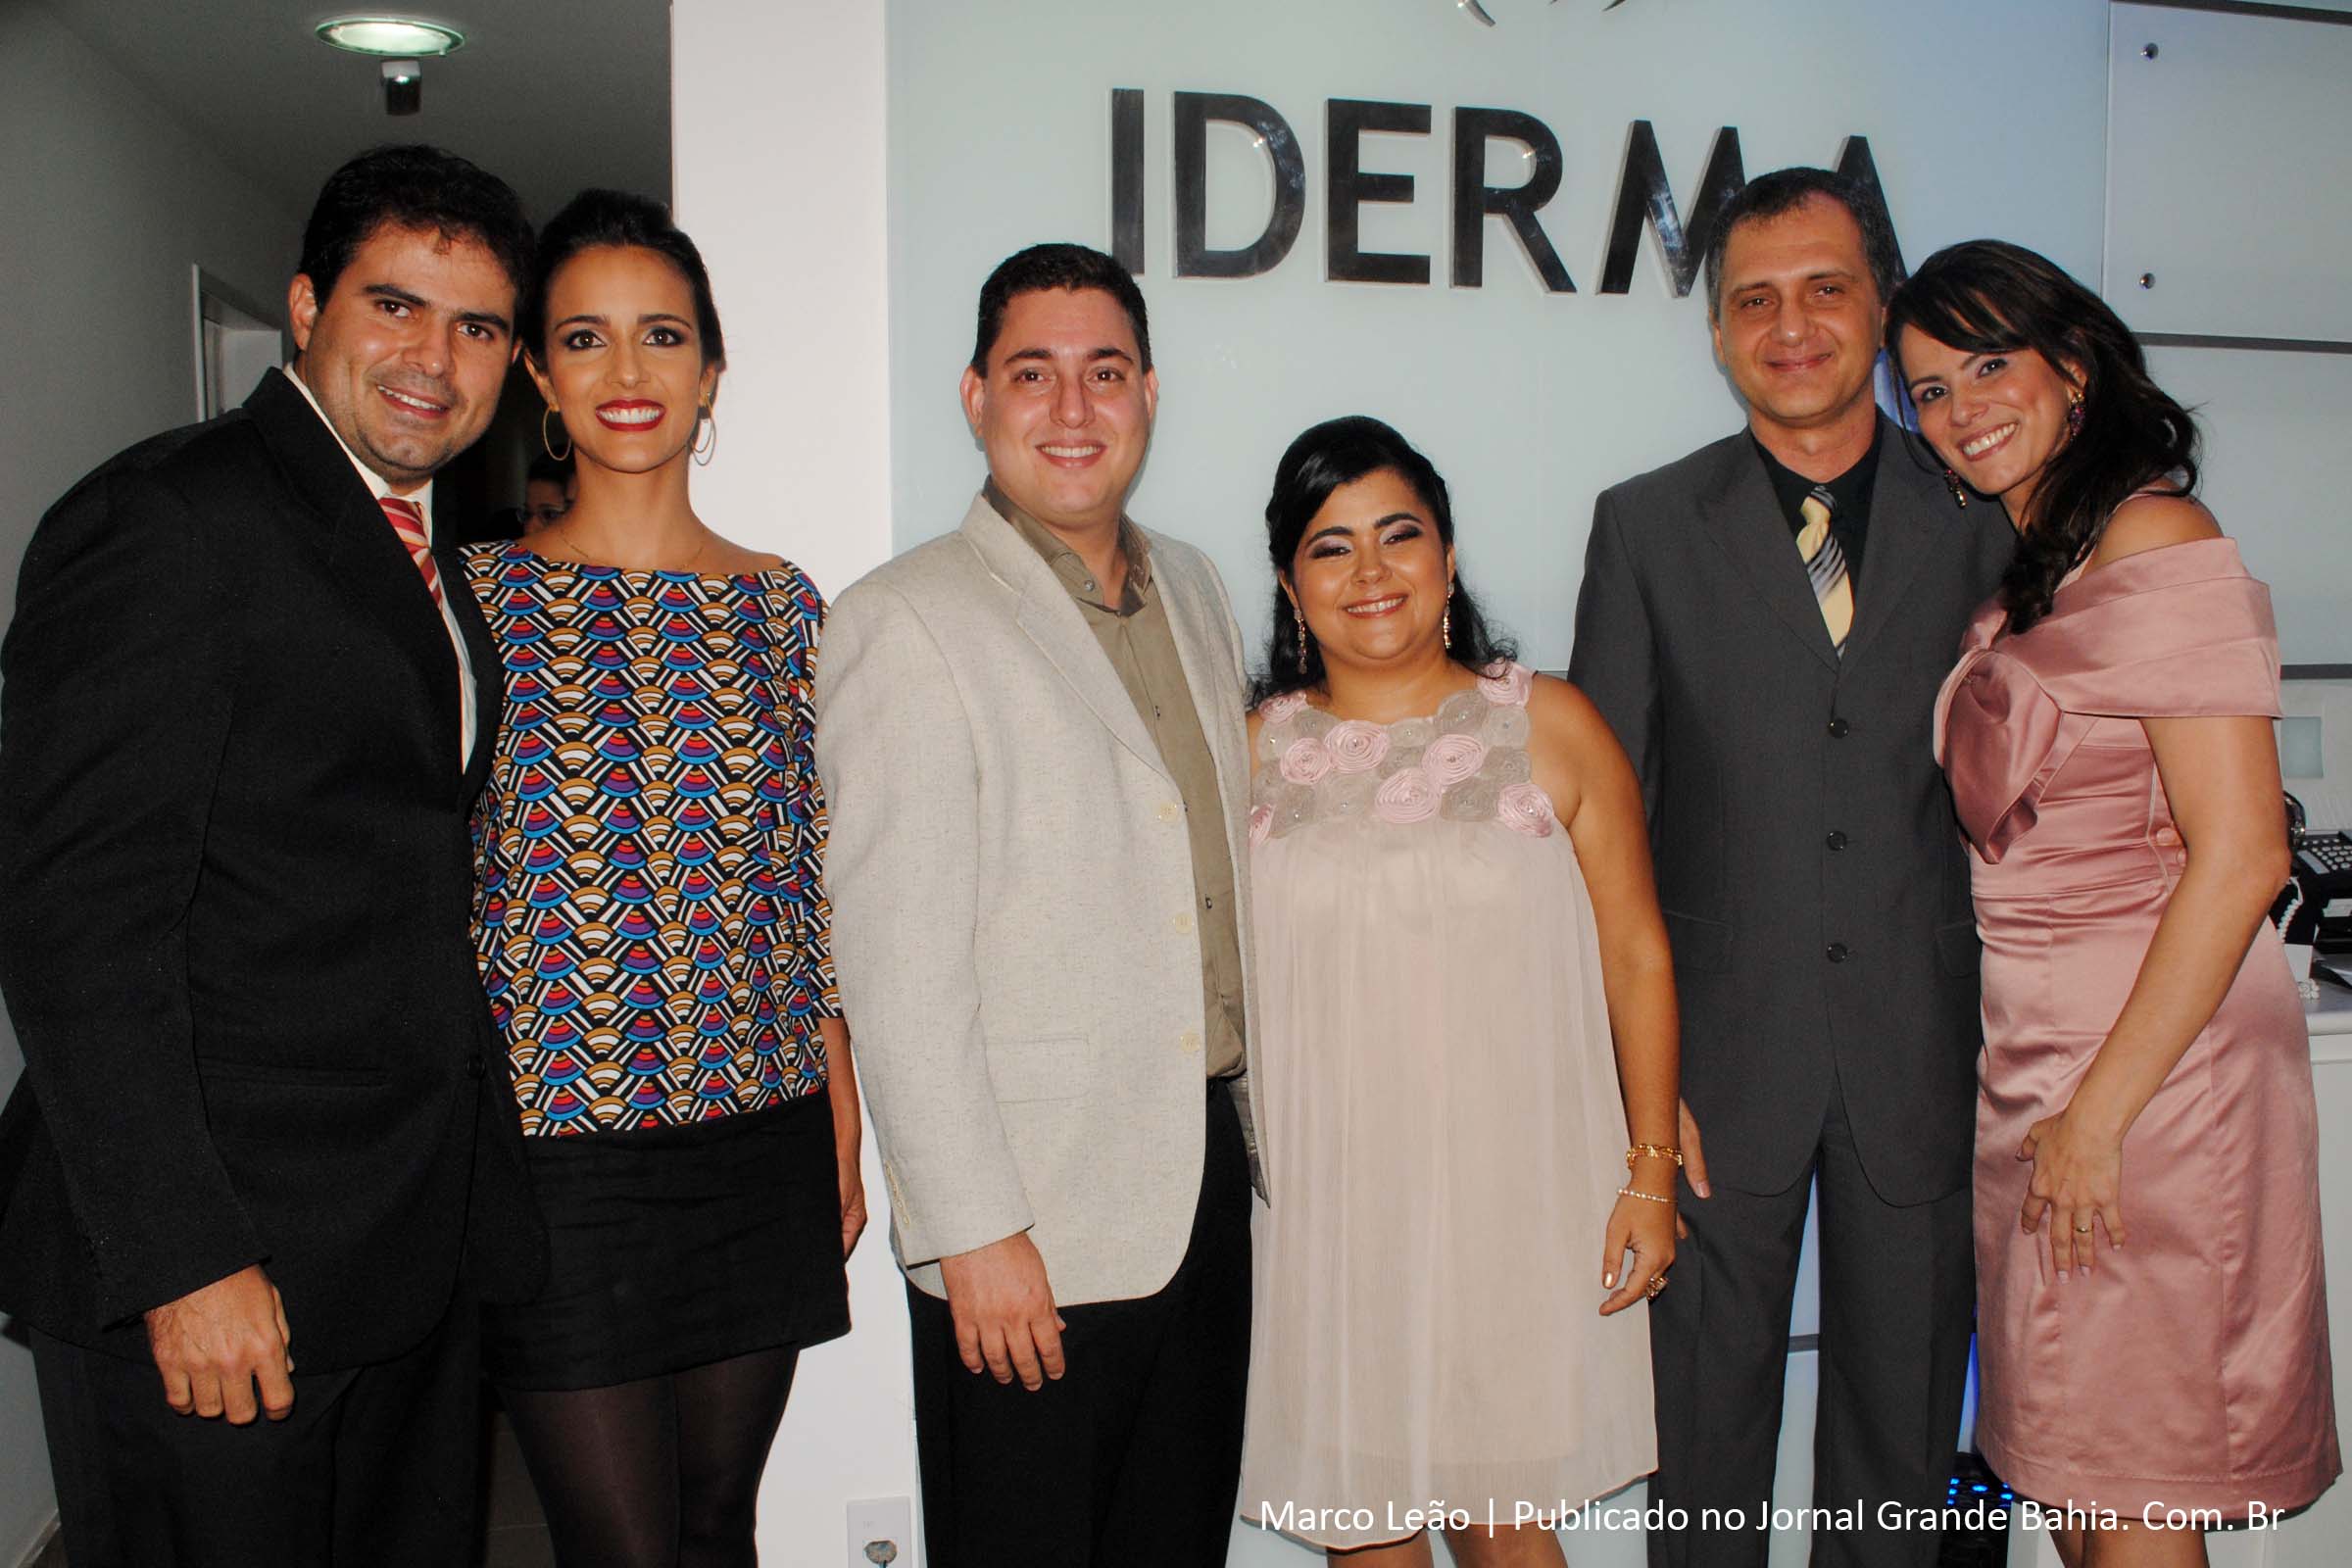 Sócias da Clínica Iderma, Dra. Helga Clementino, Dra. Rivana Bosch e Dra Deborah Duarte com seus respectivos maridos na inauguração.